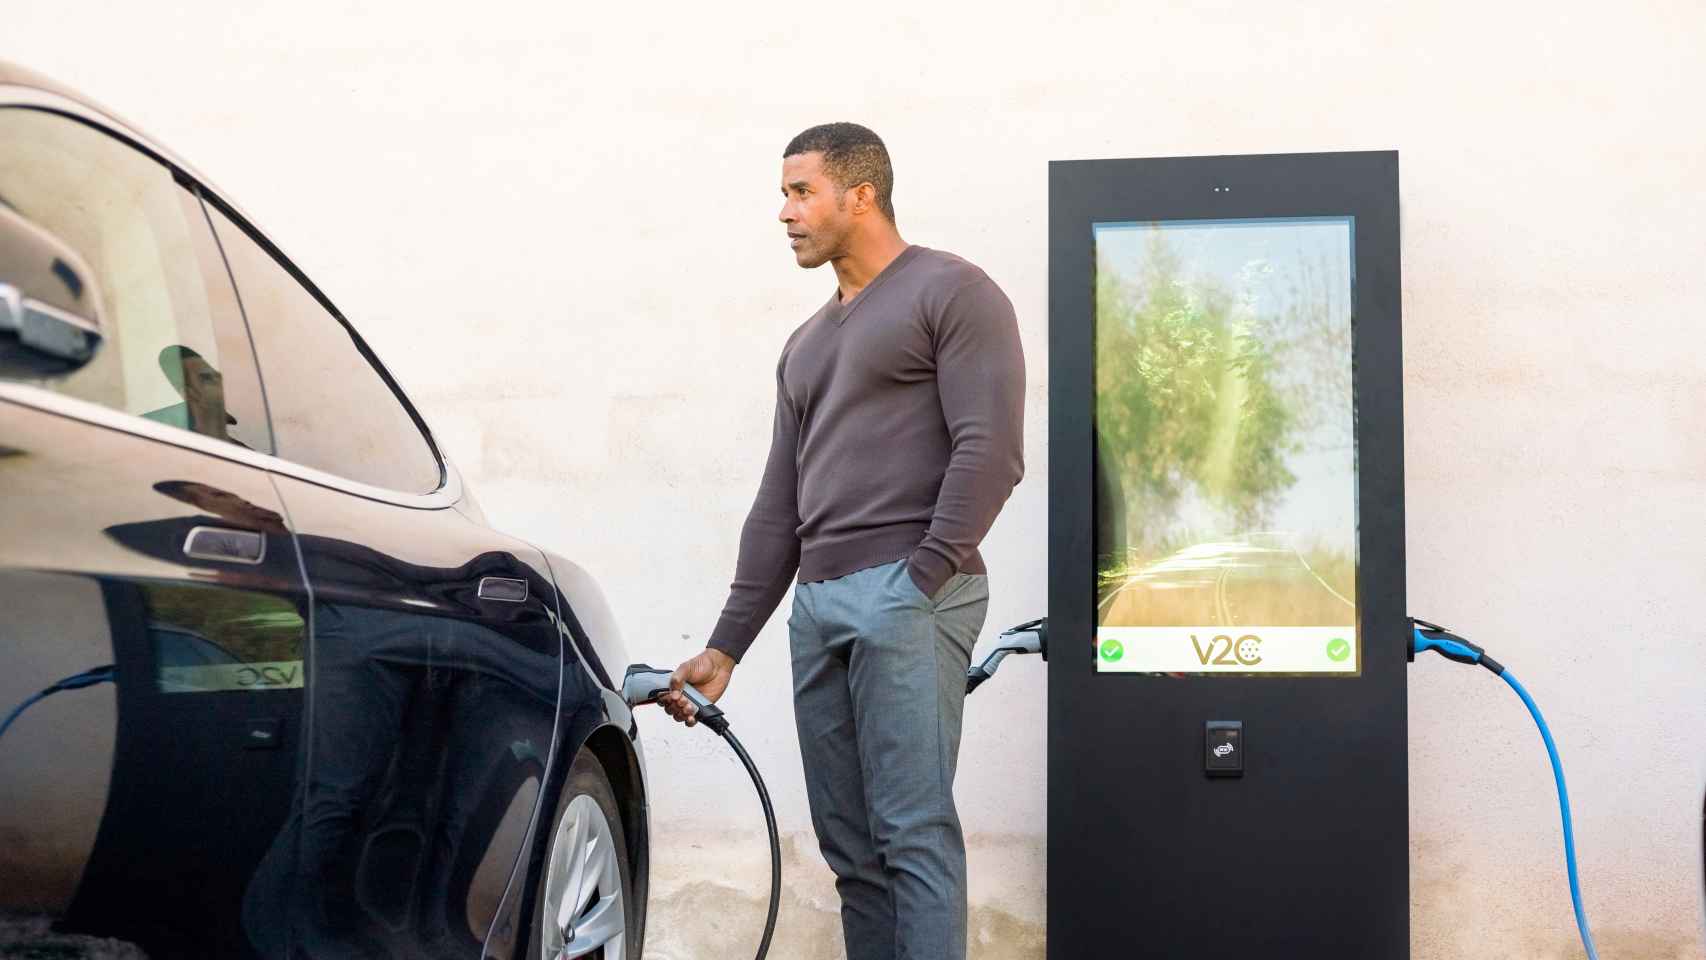 La solución Screen cuenta con un innovador diseño con una pantalla de 43 pulgadas que combina la carga de vehículos con la comercialización publicitaria.